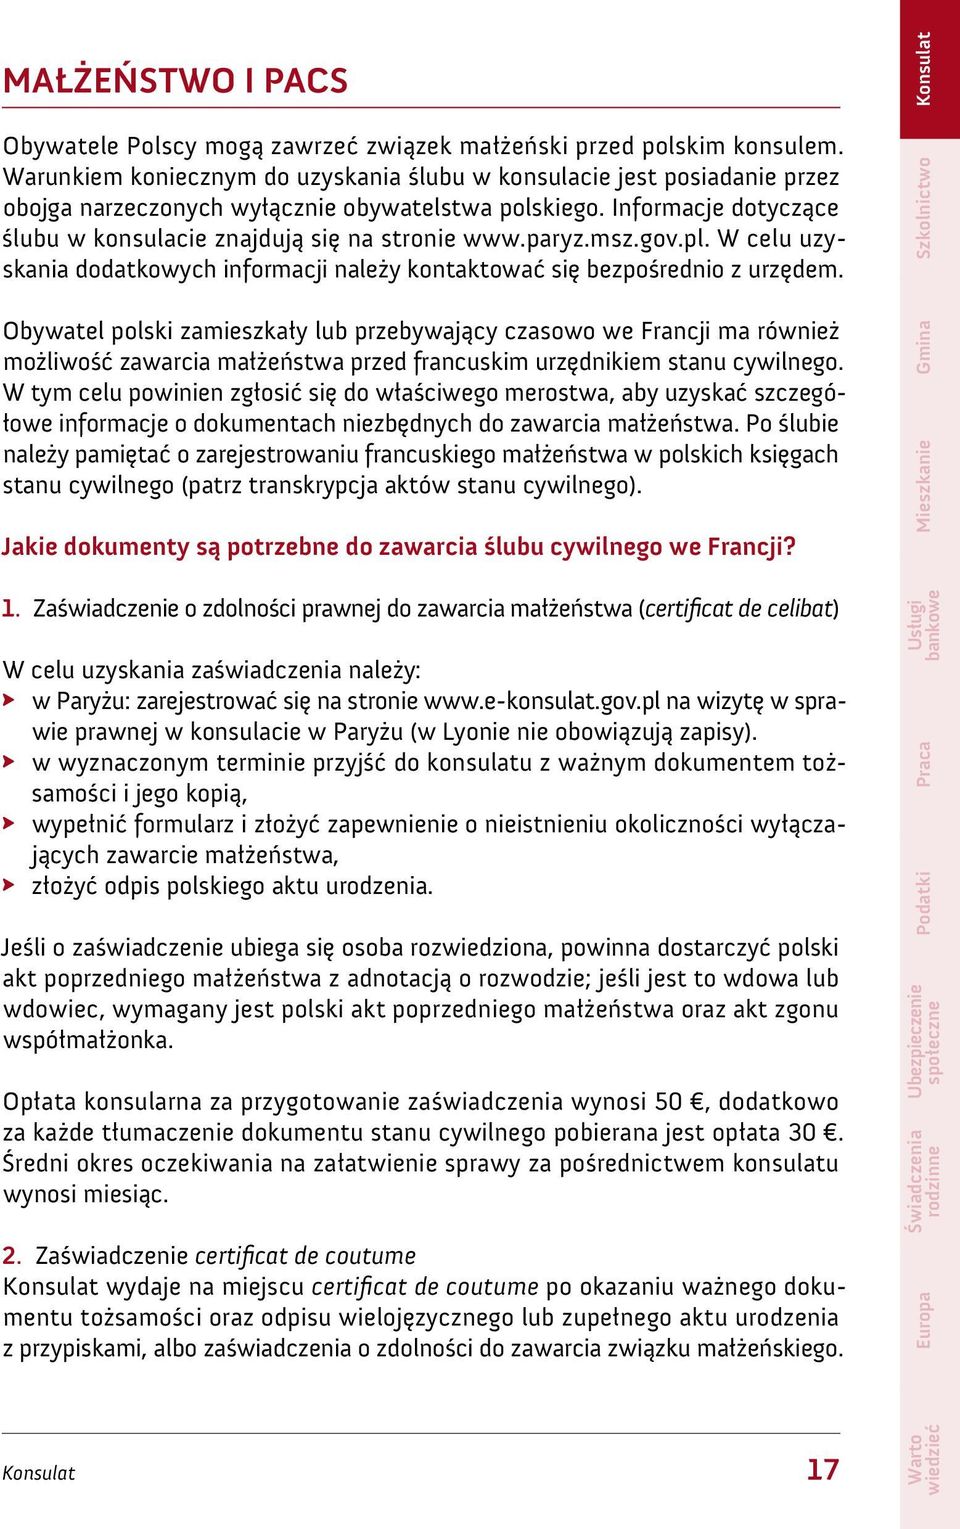 paryz.msz.gov.pl. W celu uzyskania dodatkowych informacji należy kontaktować się bezpośrednio z urzędem.